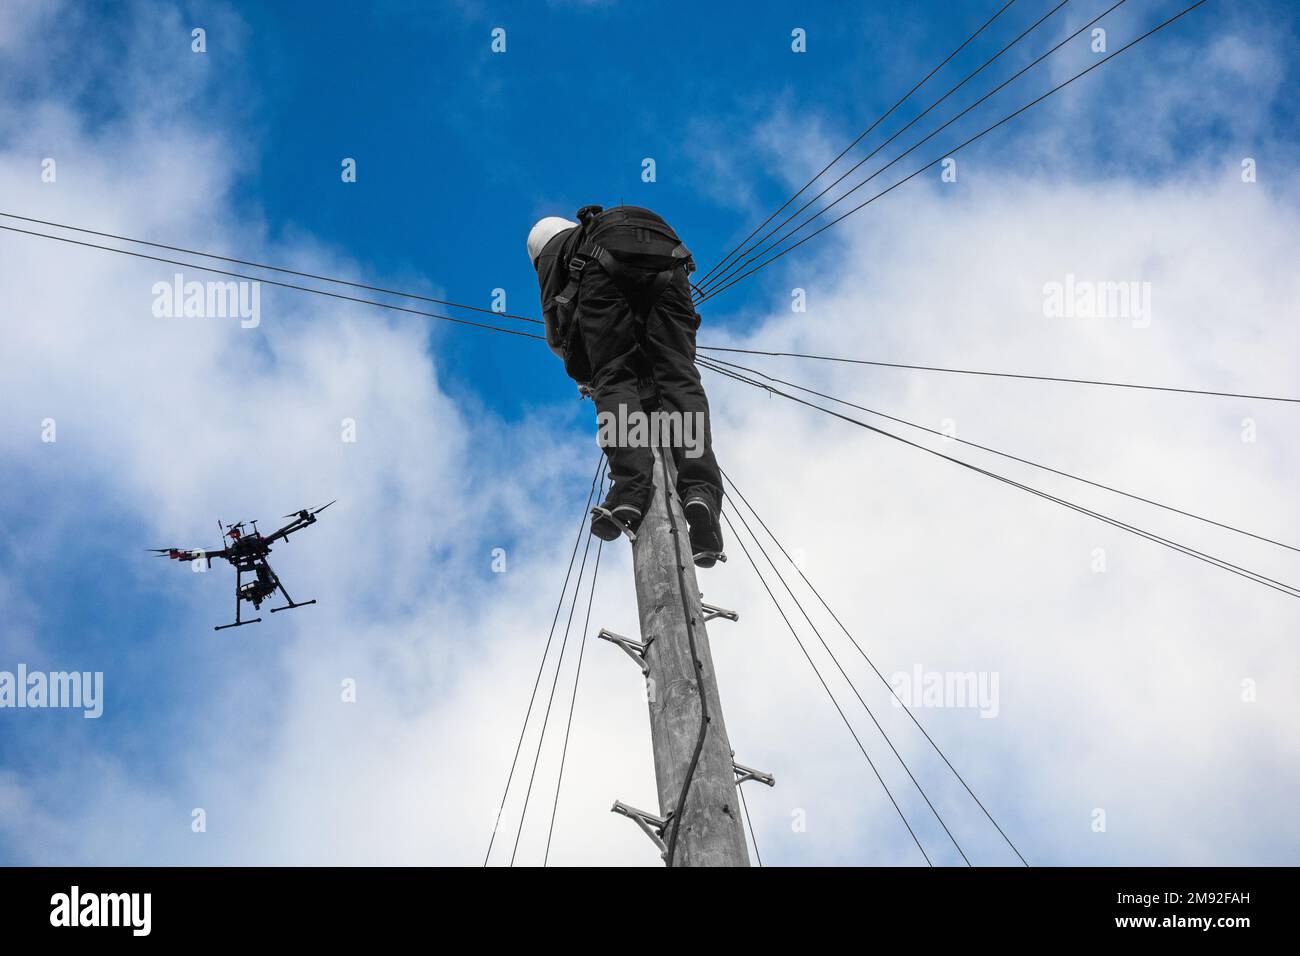 Telecomunicazioni,ingegnere di telecomunicazioni che lavora su palo telegrafo con drone che vola sopra. Tecnologia dei droni, banda larga, 5g, internet... concetto. REGNO UNITO Foto Stock